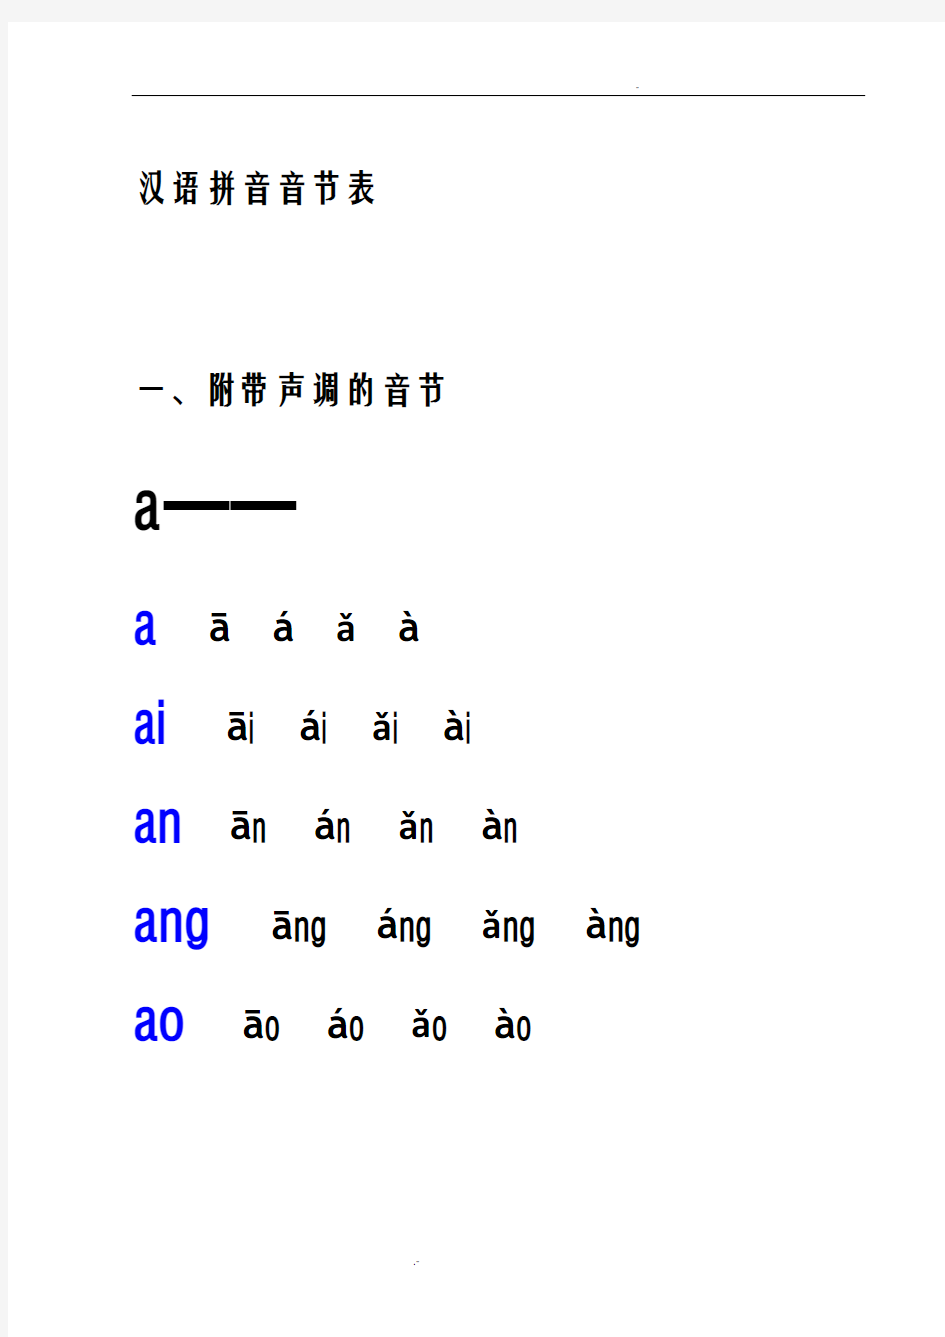 汉语拼音音节表(附带声调和不带声调的音节)